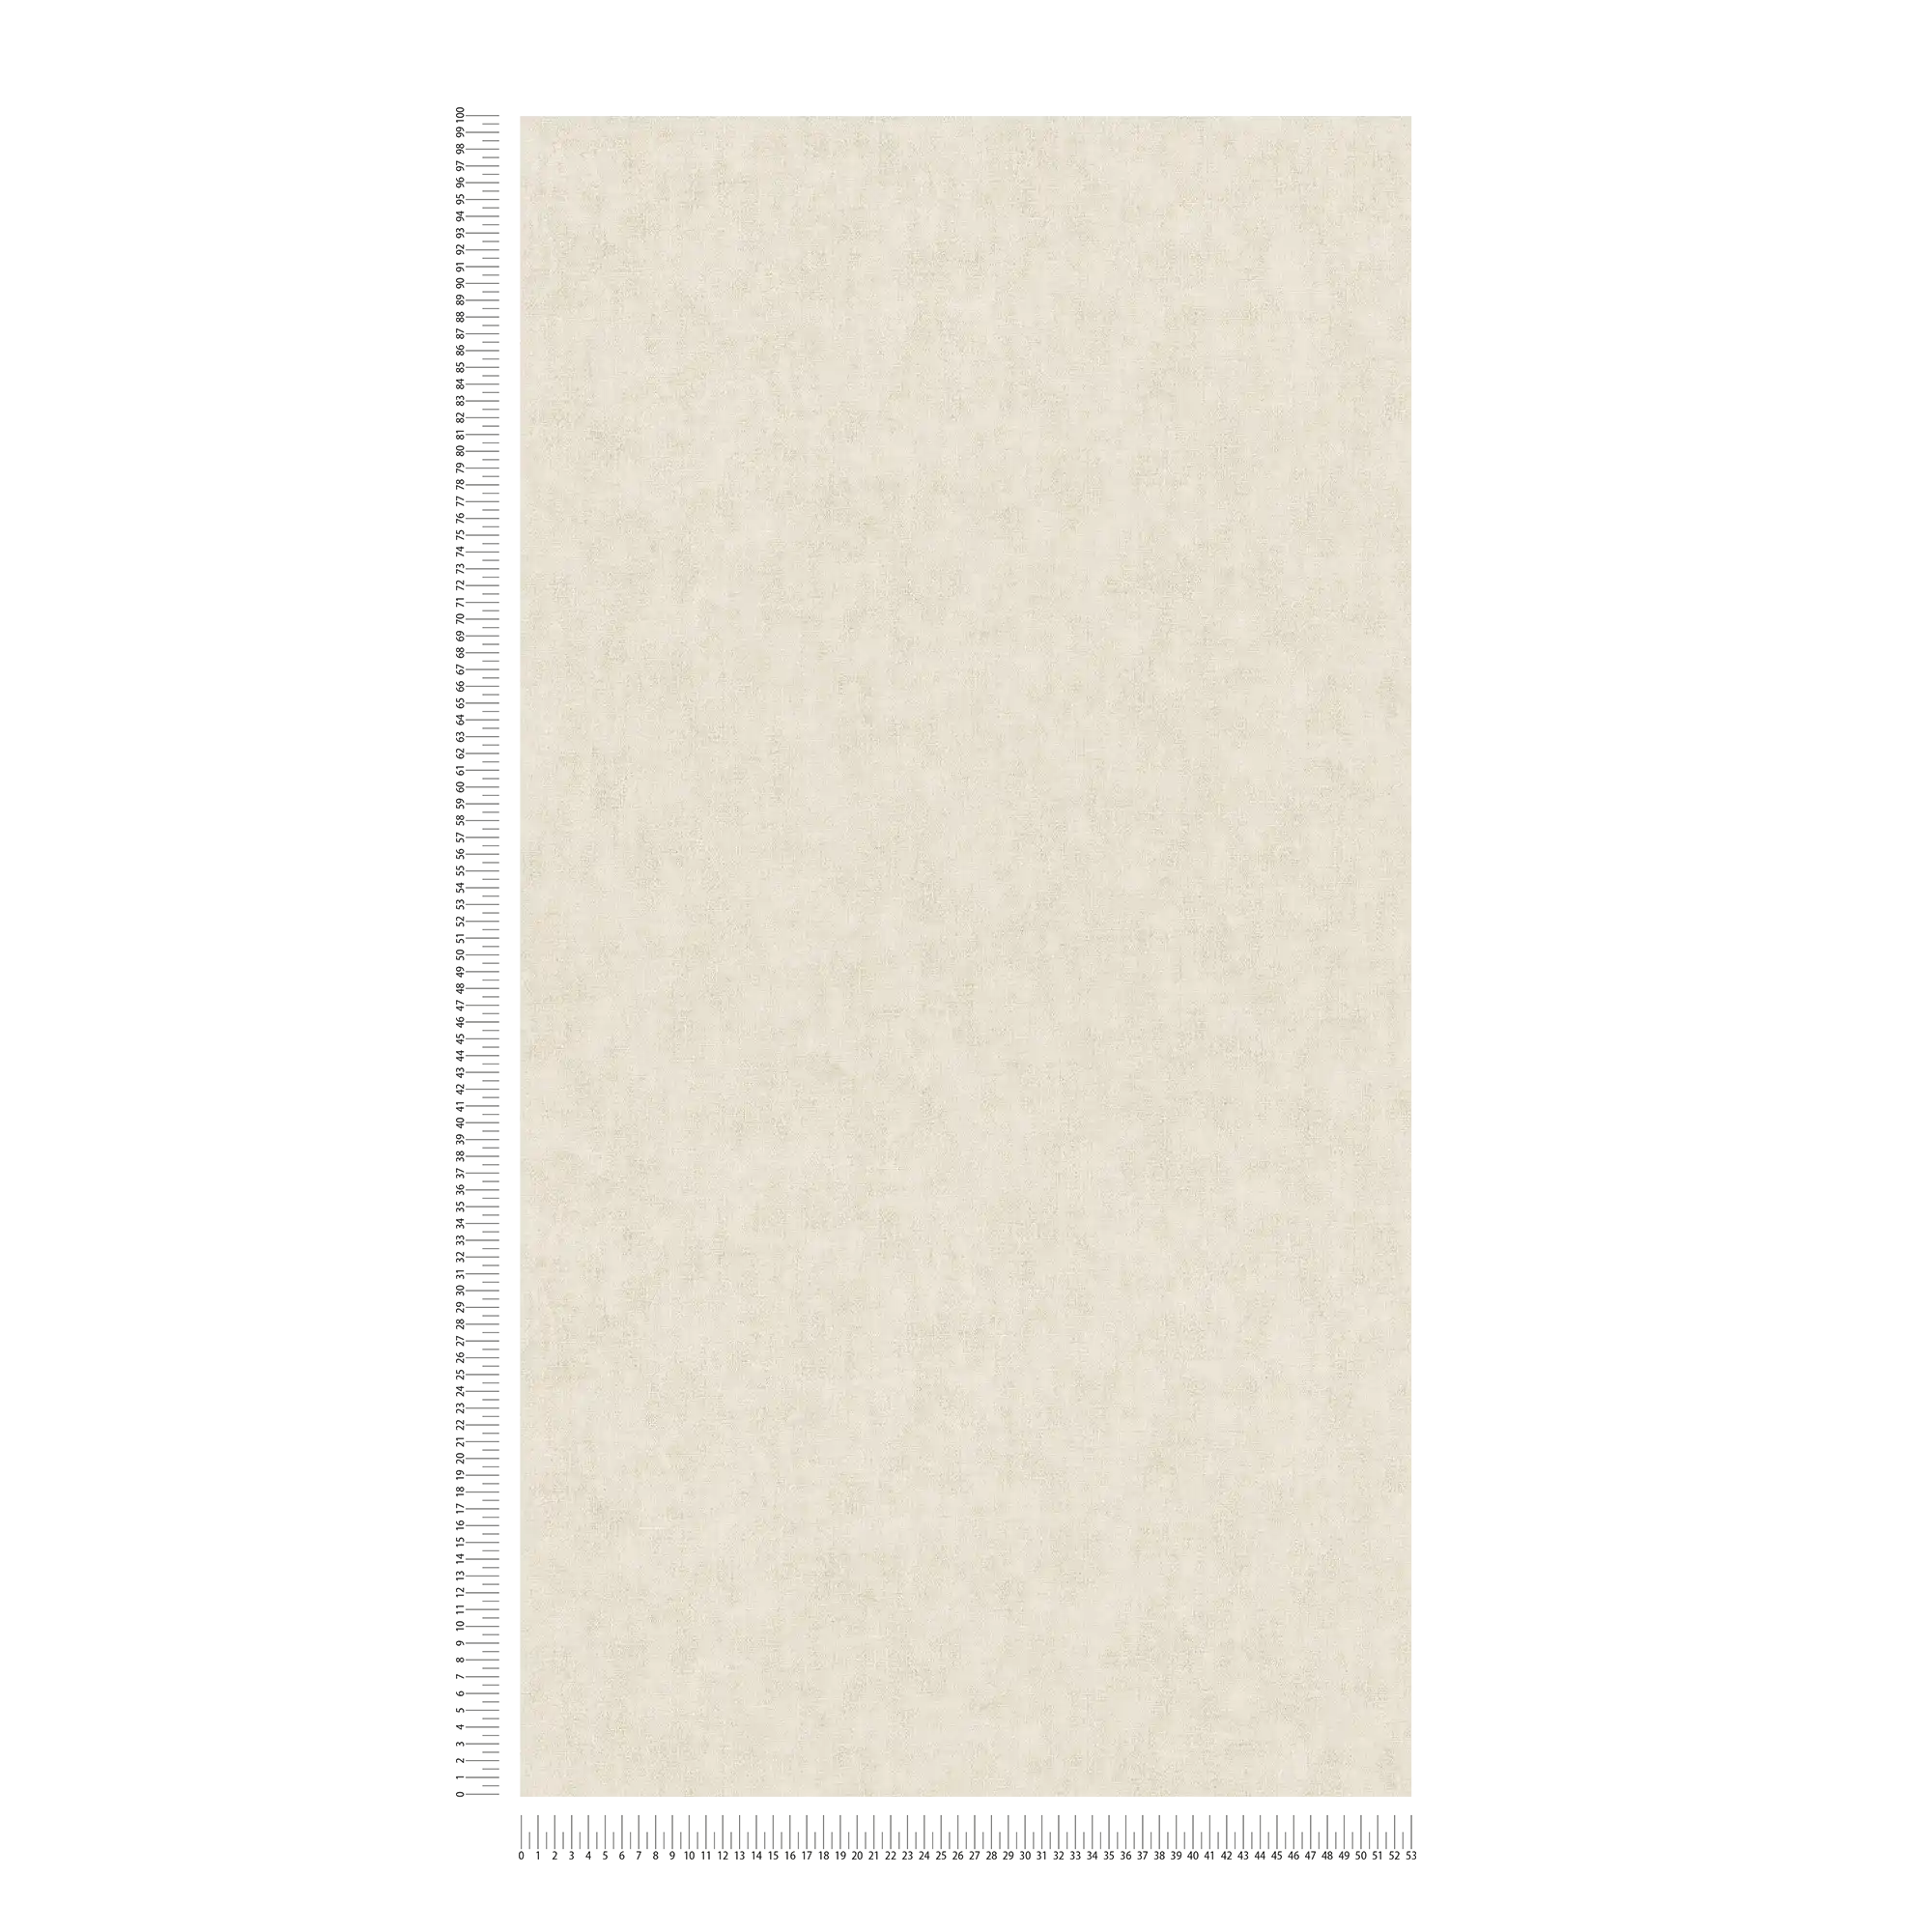             Carta da parati a tinta unita in stile scandinavo con effetto lino - beige
        